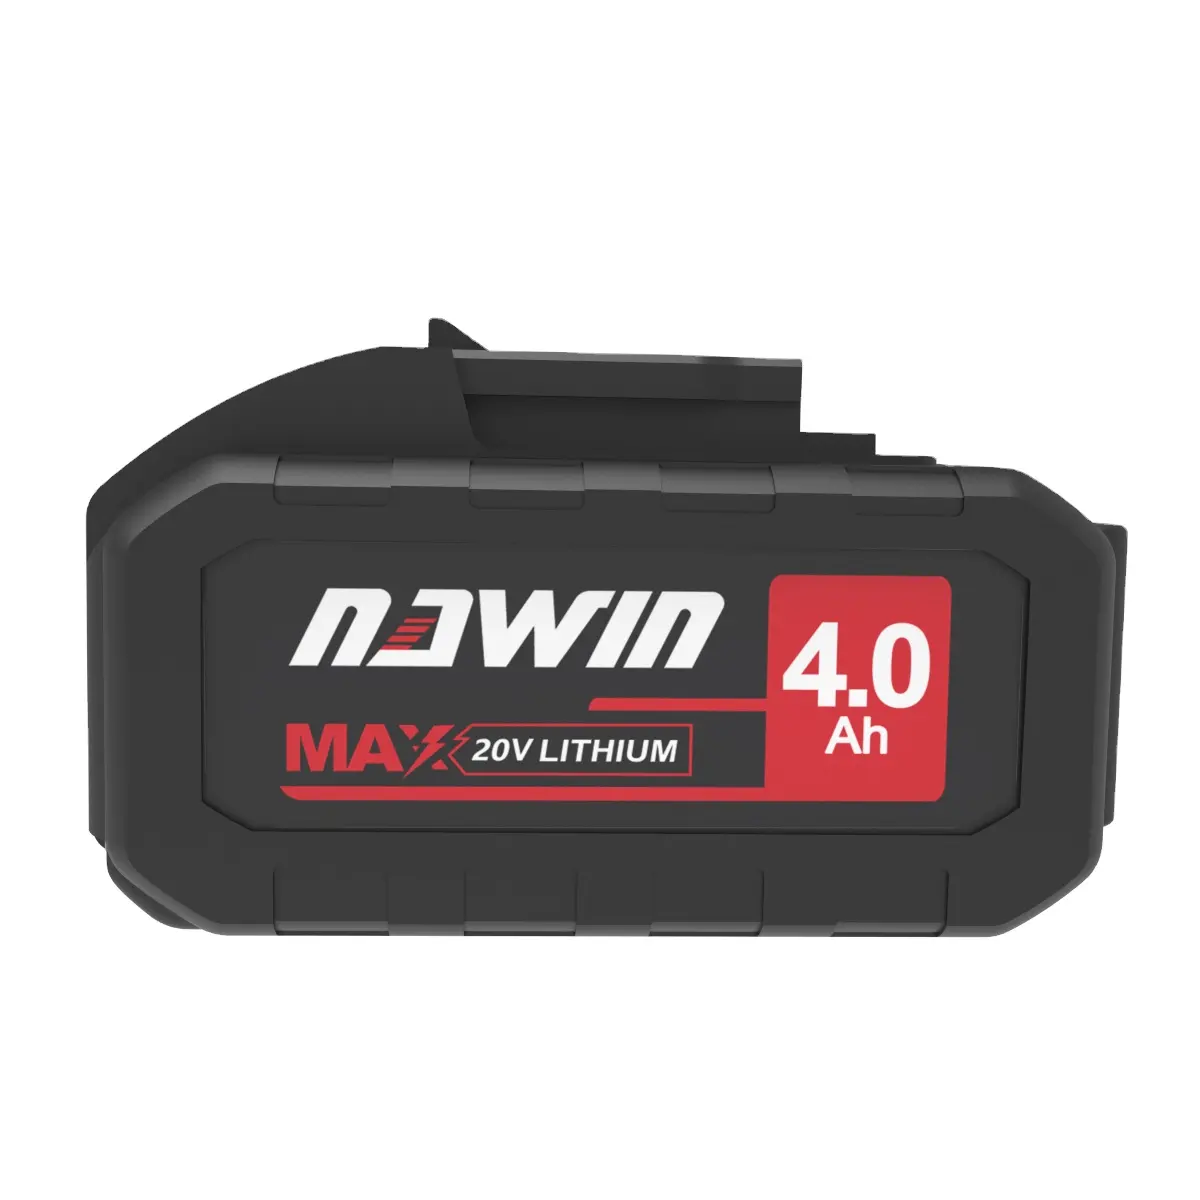 Nawin melhor qualidade bateria ferramenta sem fio bateria de lítio para 21v ferramentas elétricas sem fio broca